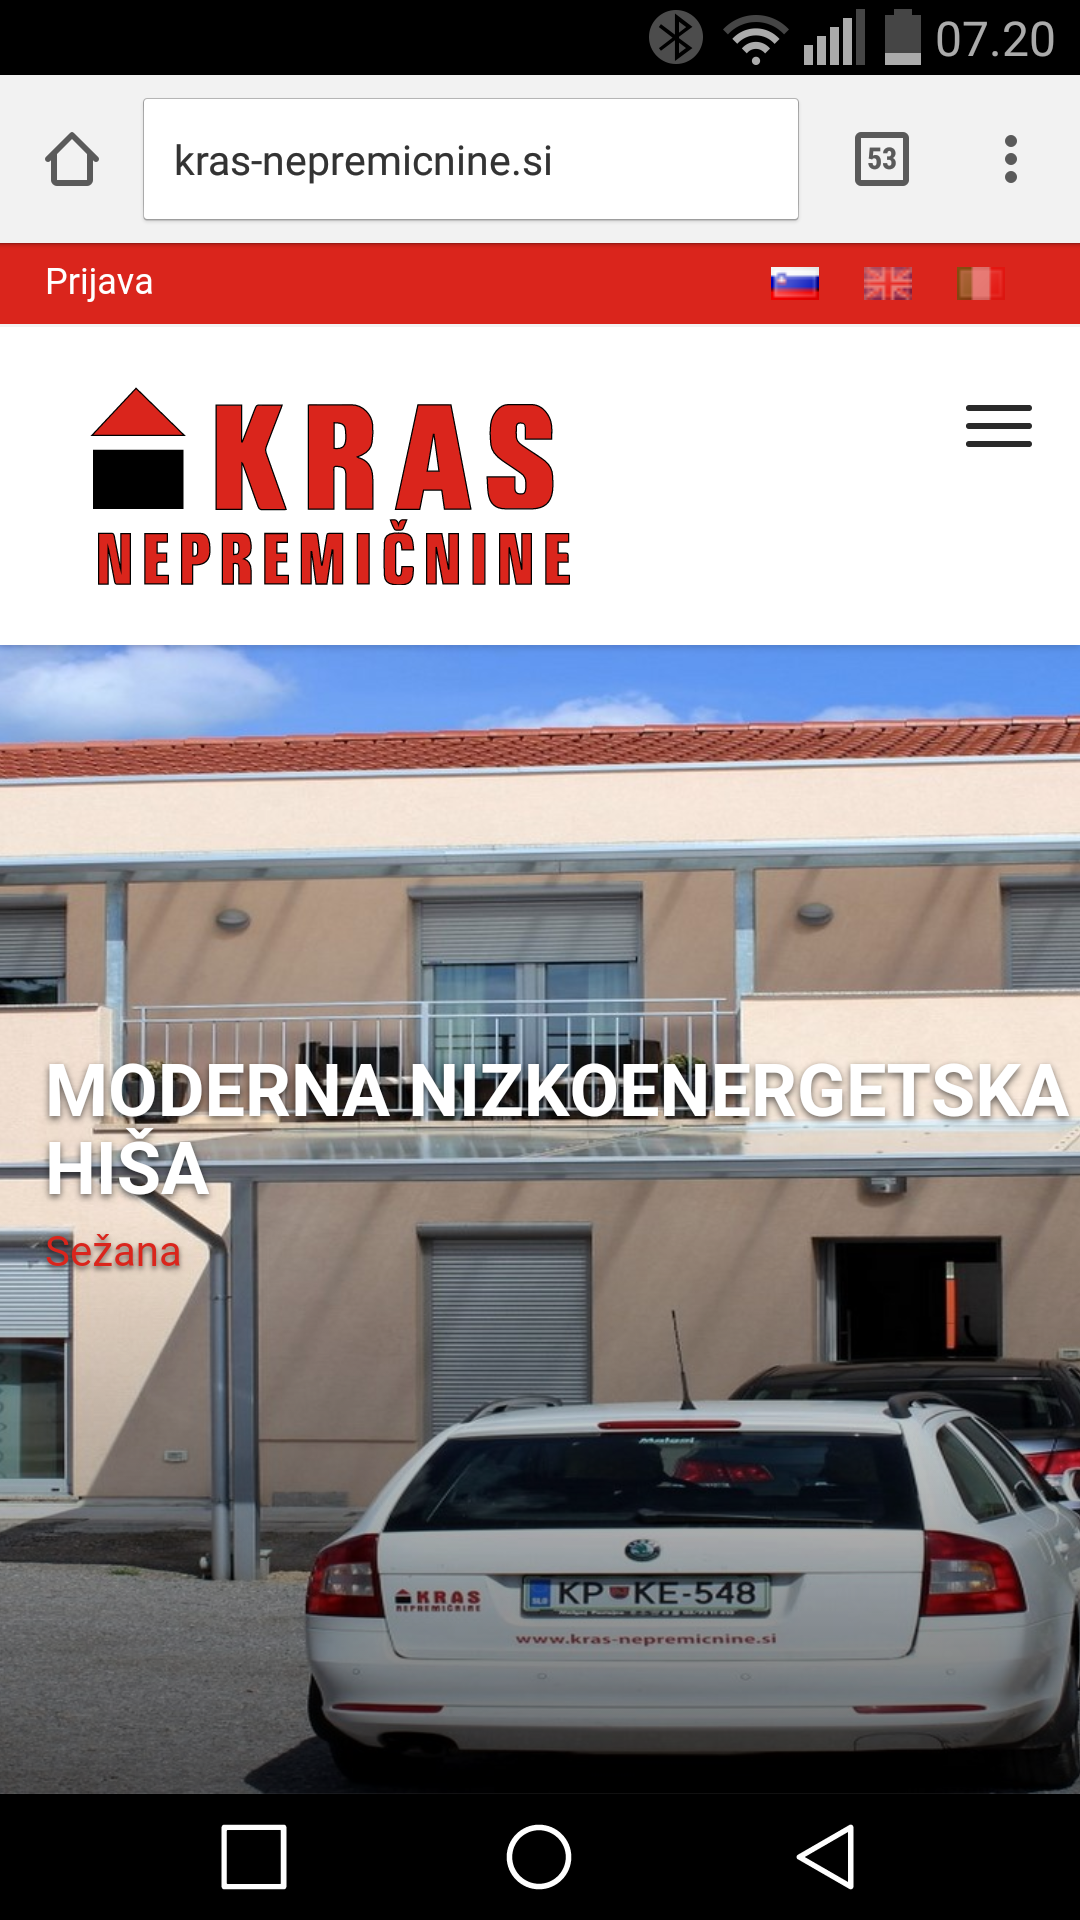 Kras-nepremicnine real estate